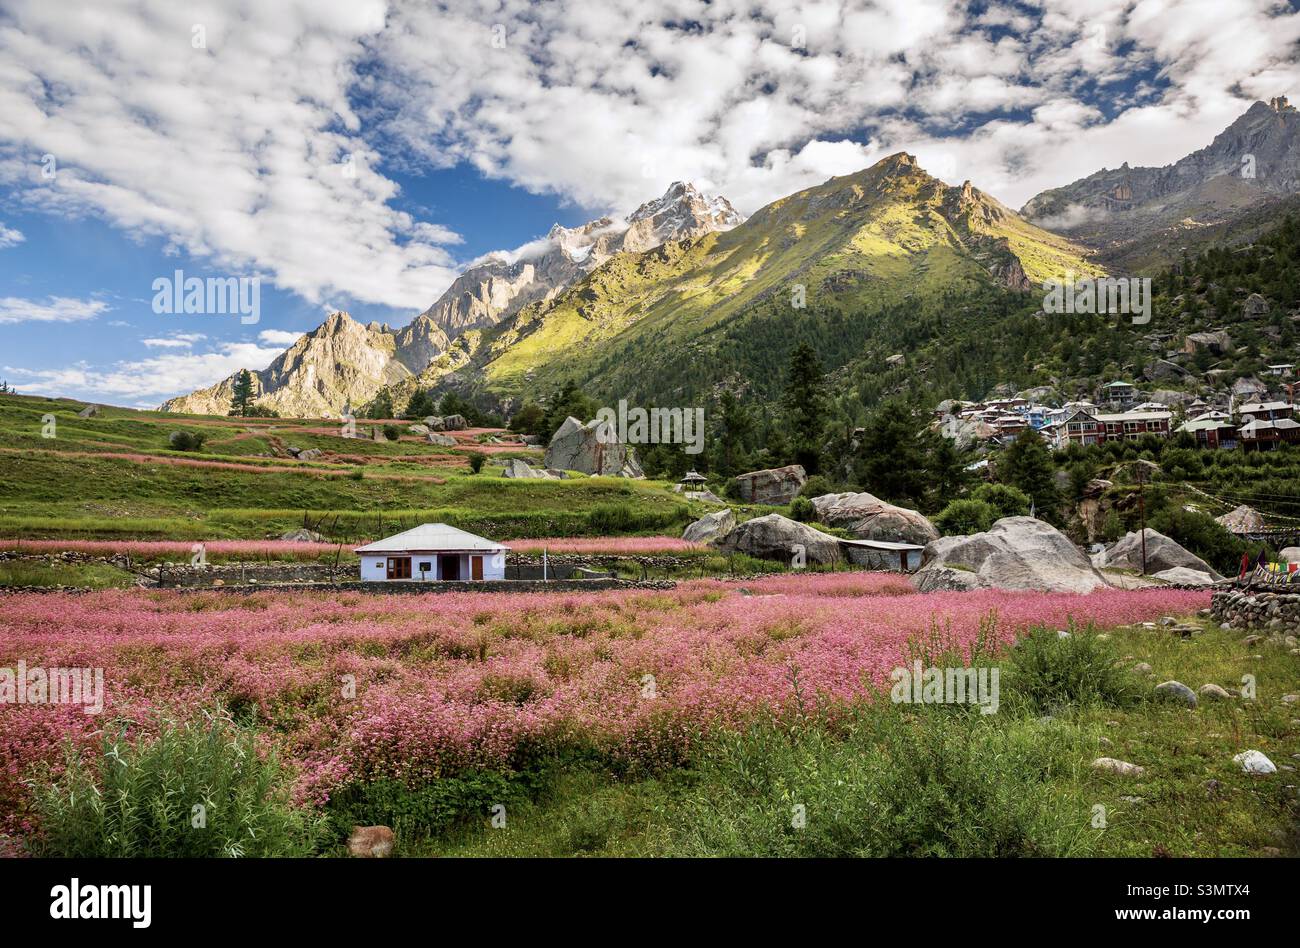 Il villaggio di Rakchham in Himachal Pradesh circondato da un bellissimo paesaggio di Himalaya, India Foto Stock